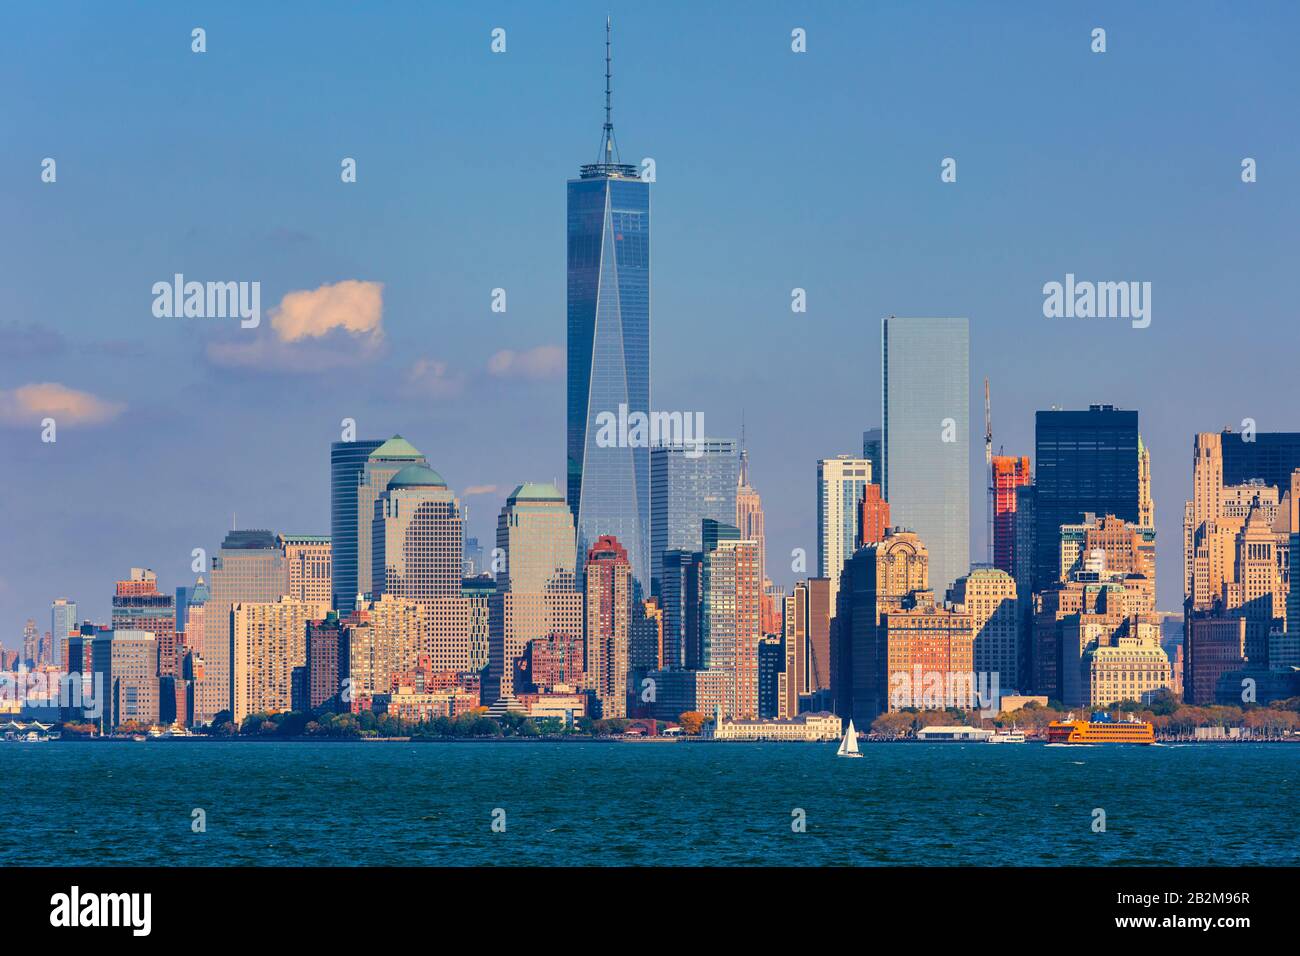 Manhattan inférieur vu de New York Bay. Le grand bâtiment est Un World Trade Center, également connu sous le nom de 1 World Trade Center, 1 WTC ou Freedom Tower. Nouveau Banque D'Images